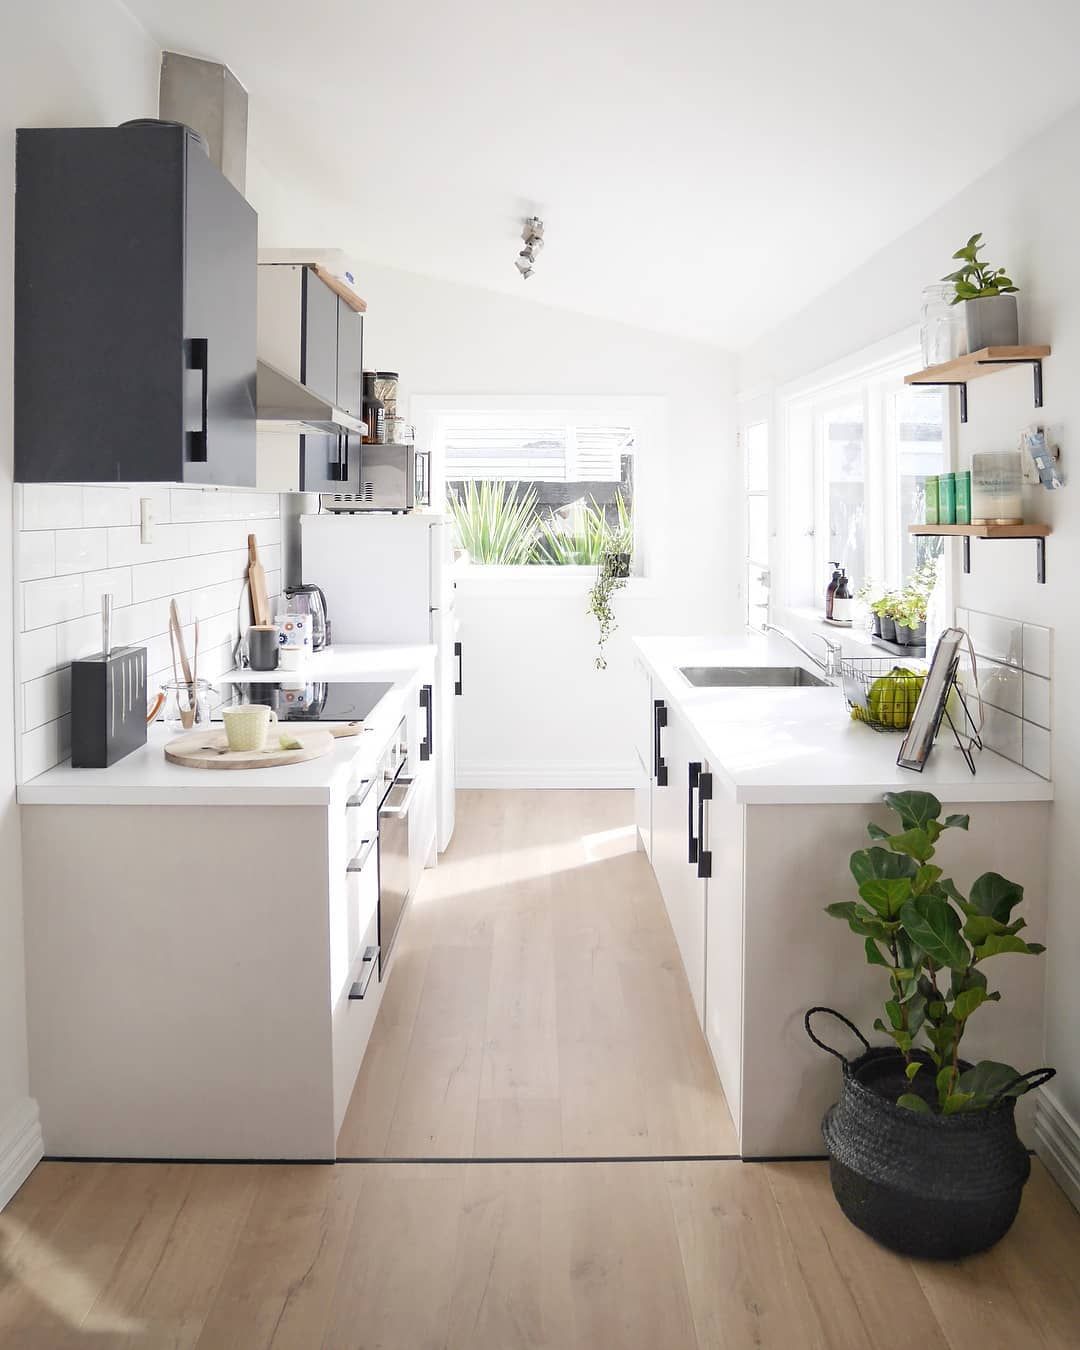 18 Best Galley Kitchen Design Ideas   Kitchen Remodel Tips